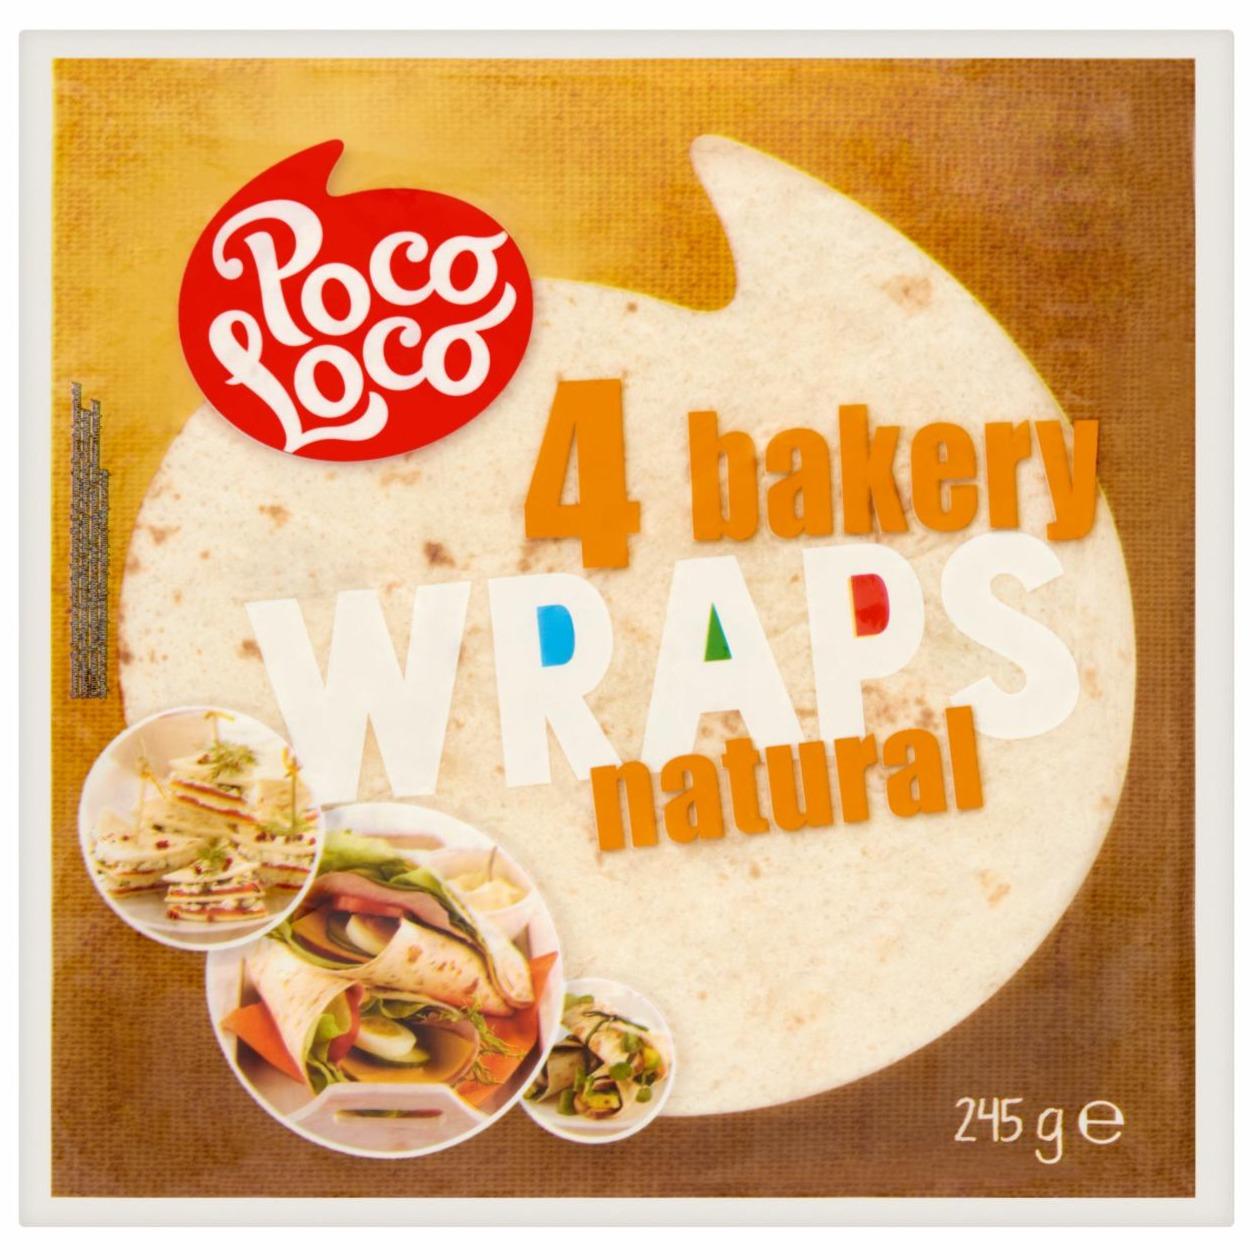 Fotografie - 4 bakery wraps original Poco Loco